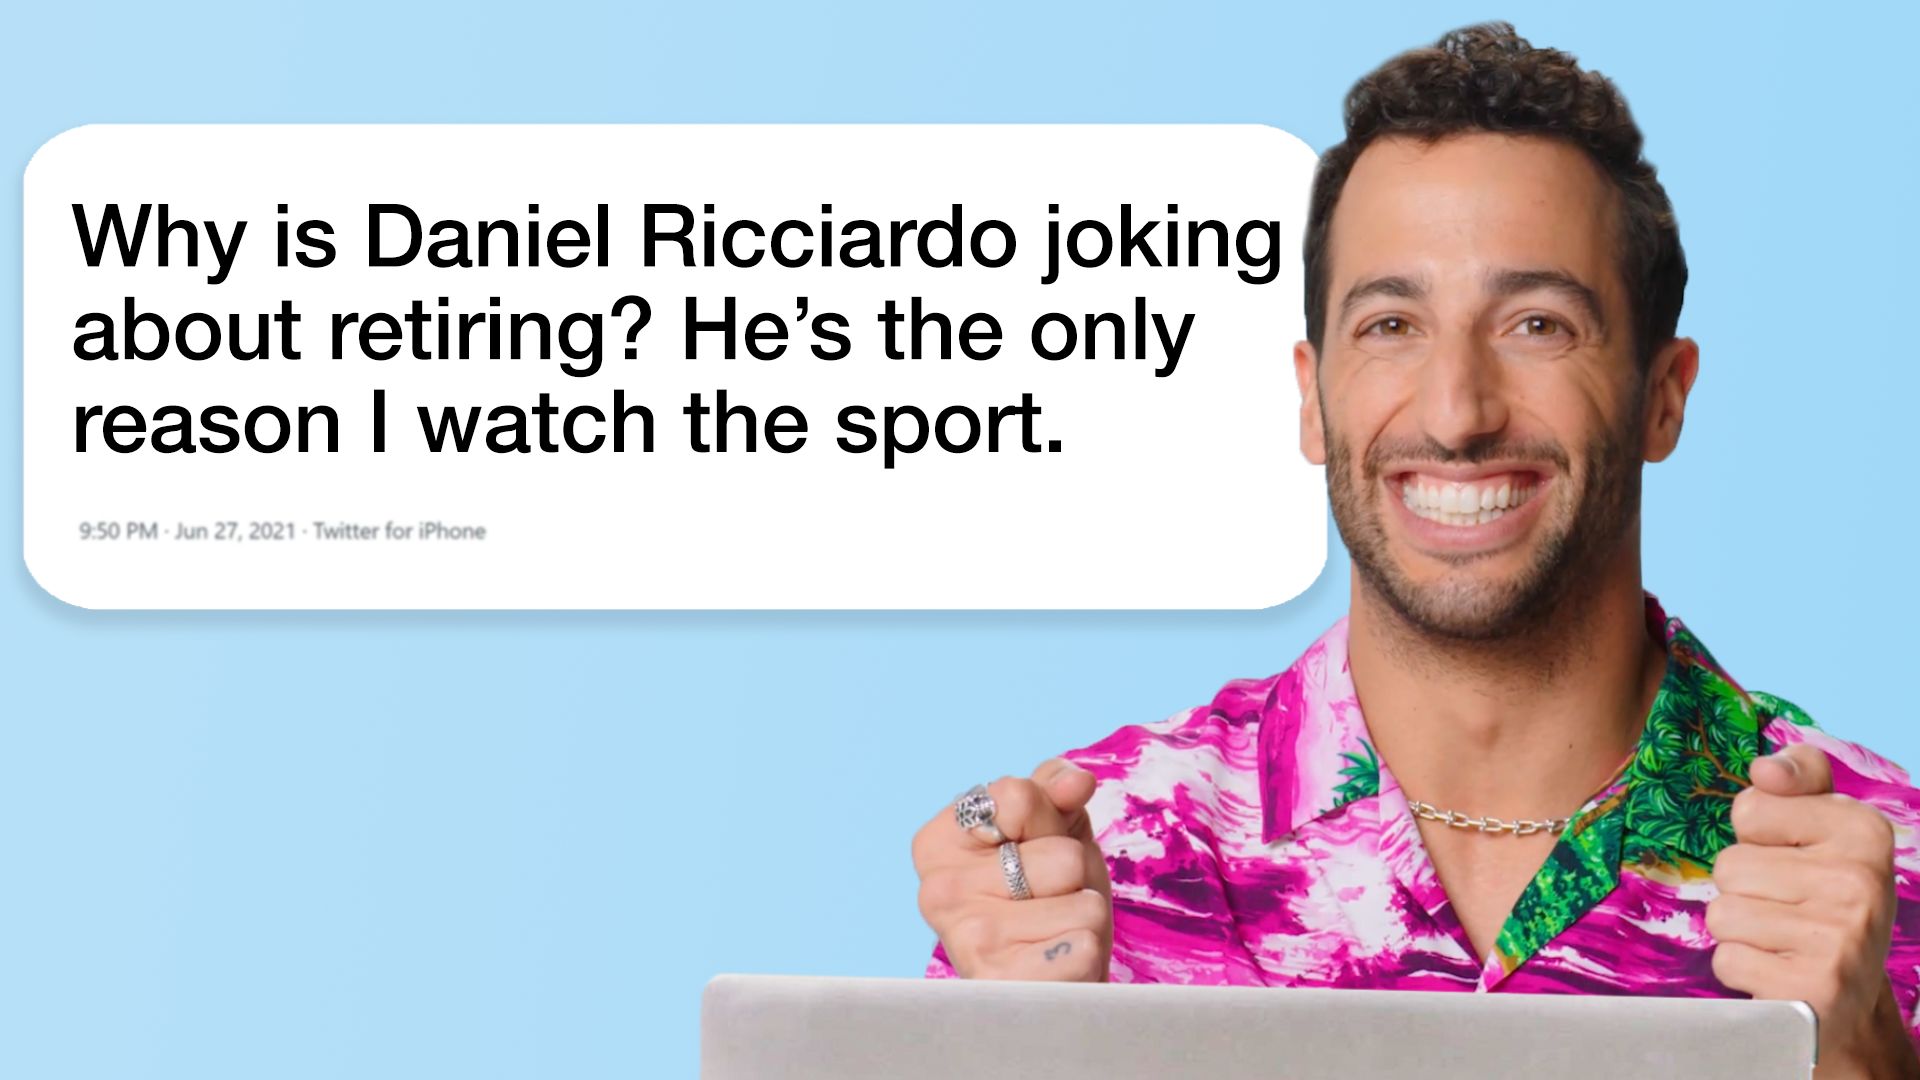 Fan của Daniel Ricciardo đang chờ đợi sự xuất hiện của anh trên mạng xã hội. Điều tuyệt vời là anh không chỉ trả lời những câu hỏi của fan mà còn đăng những bức ảnh hấp dẫn, những câu chuyện thú vị để chia sẻ với người hâm mộ. Hãy xem và tham gia vào những cuộc trò chuyện của Daniel ngay hôm nay!